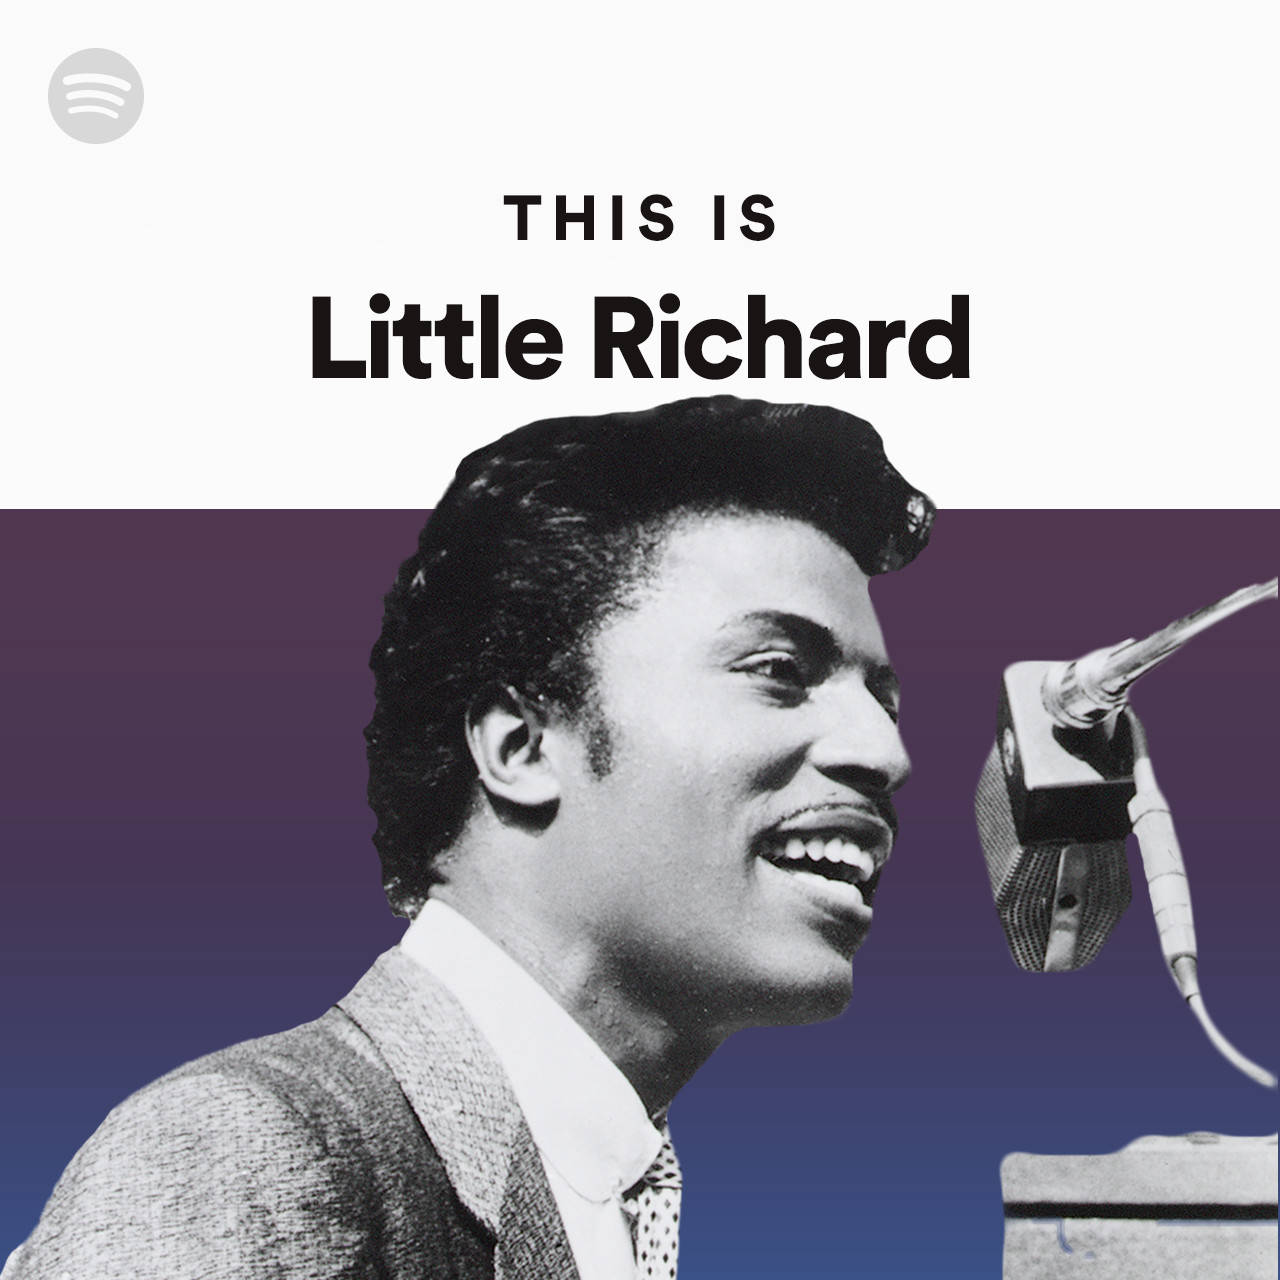 Questaè La Copertina Della Playlist Di Little Richard Su Spotify. Sfondo